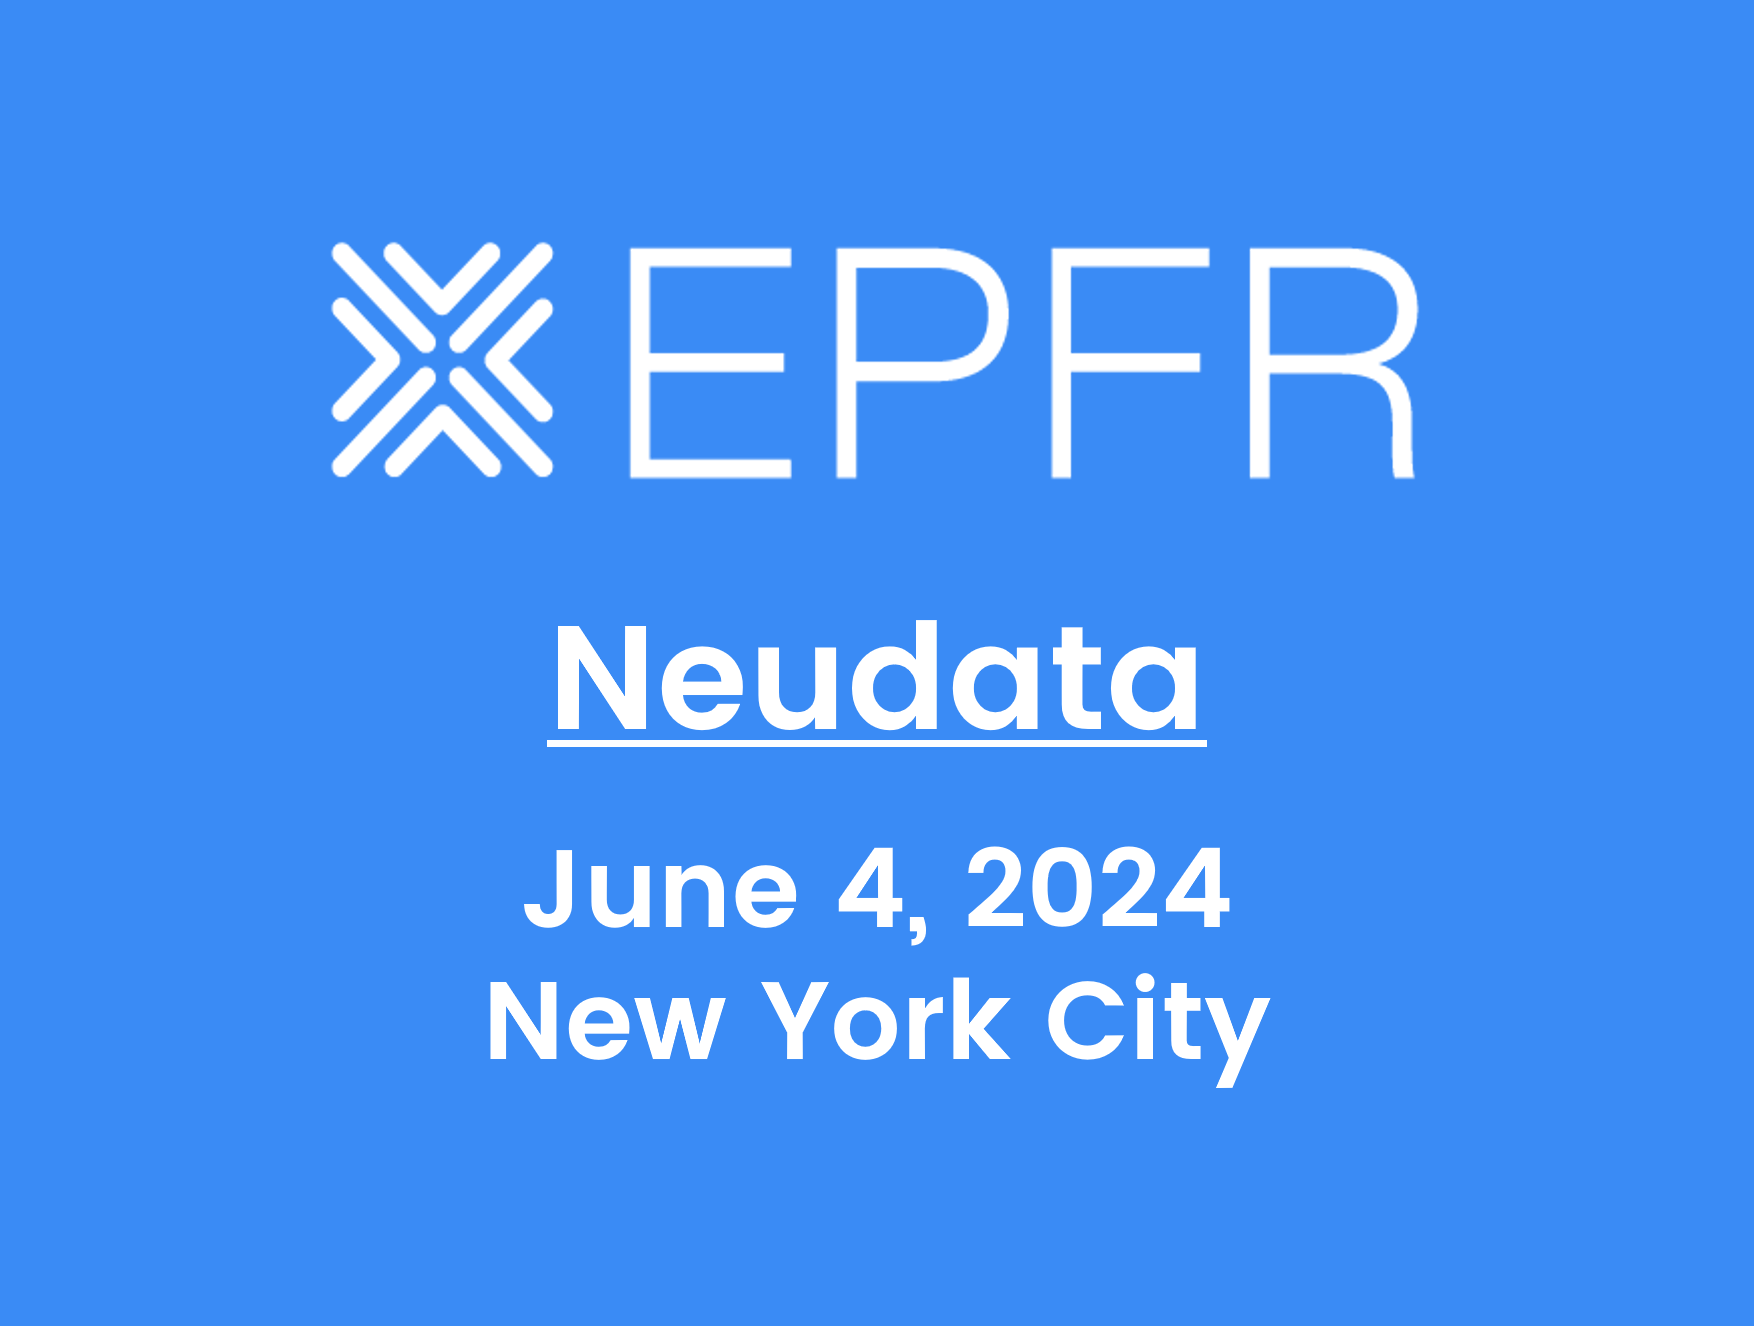 "EPFR: Neudata, June 4th 2024, New York City"